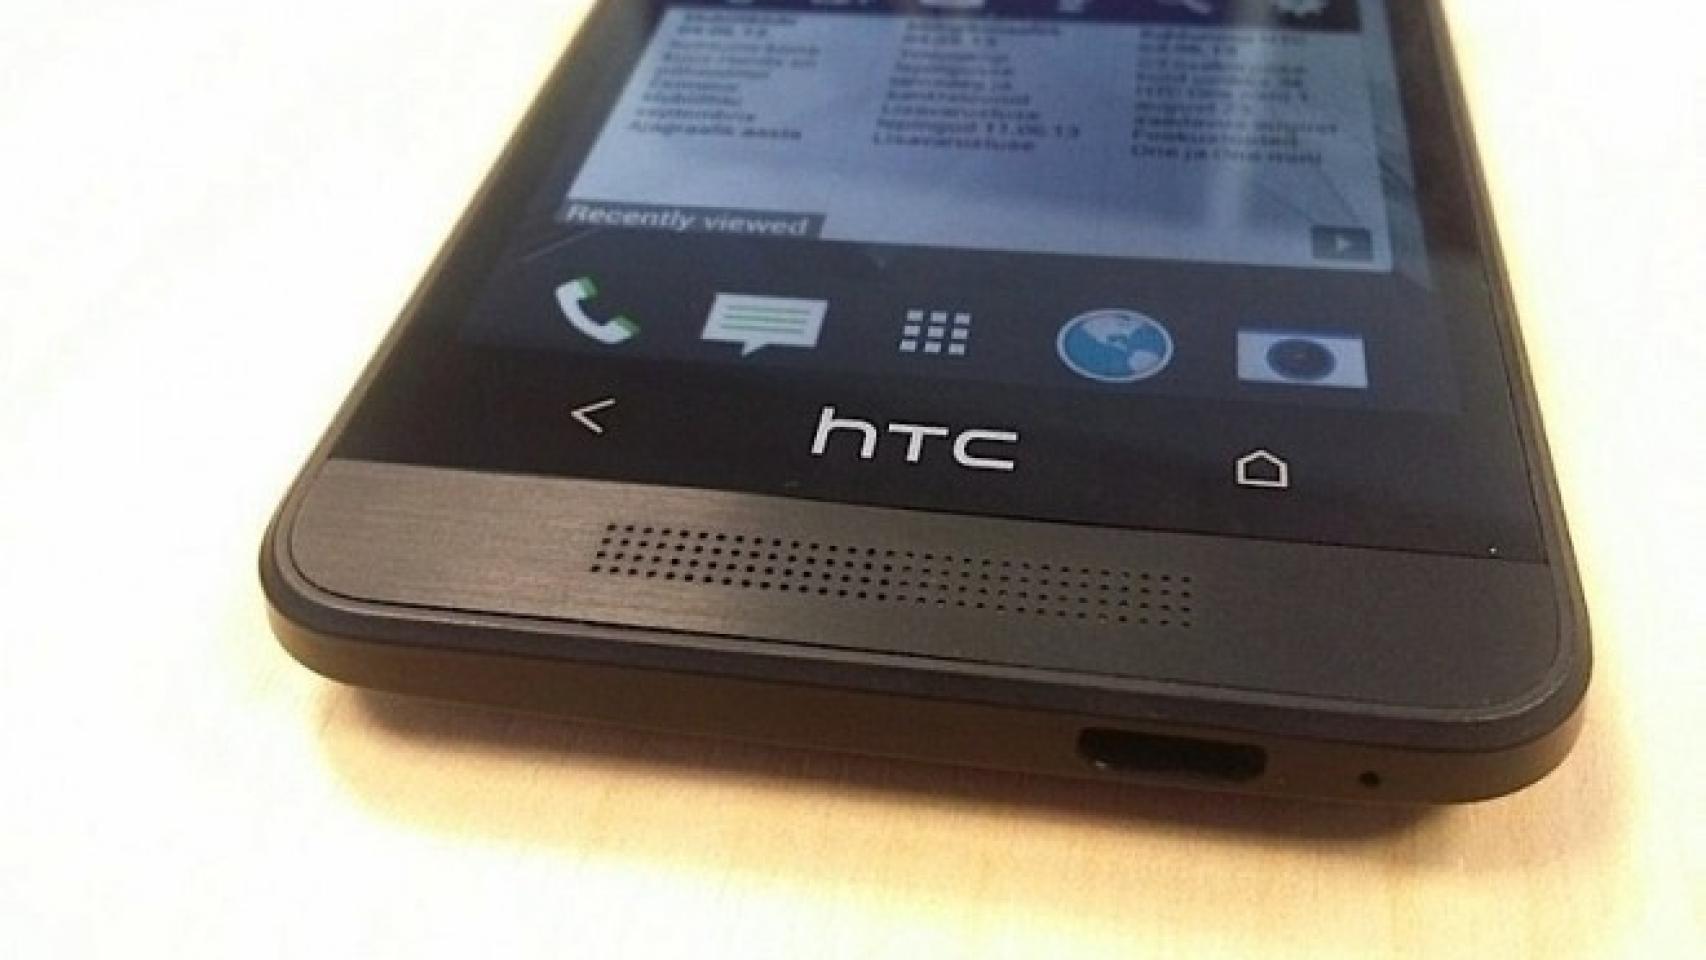 HTC One Mini: Nuevos detalles descubiertos de su hardware